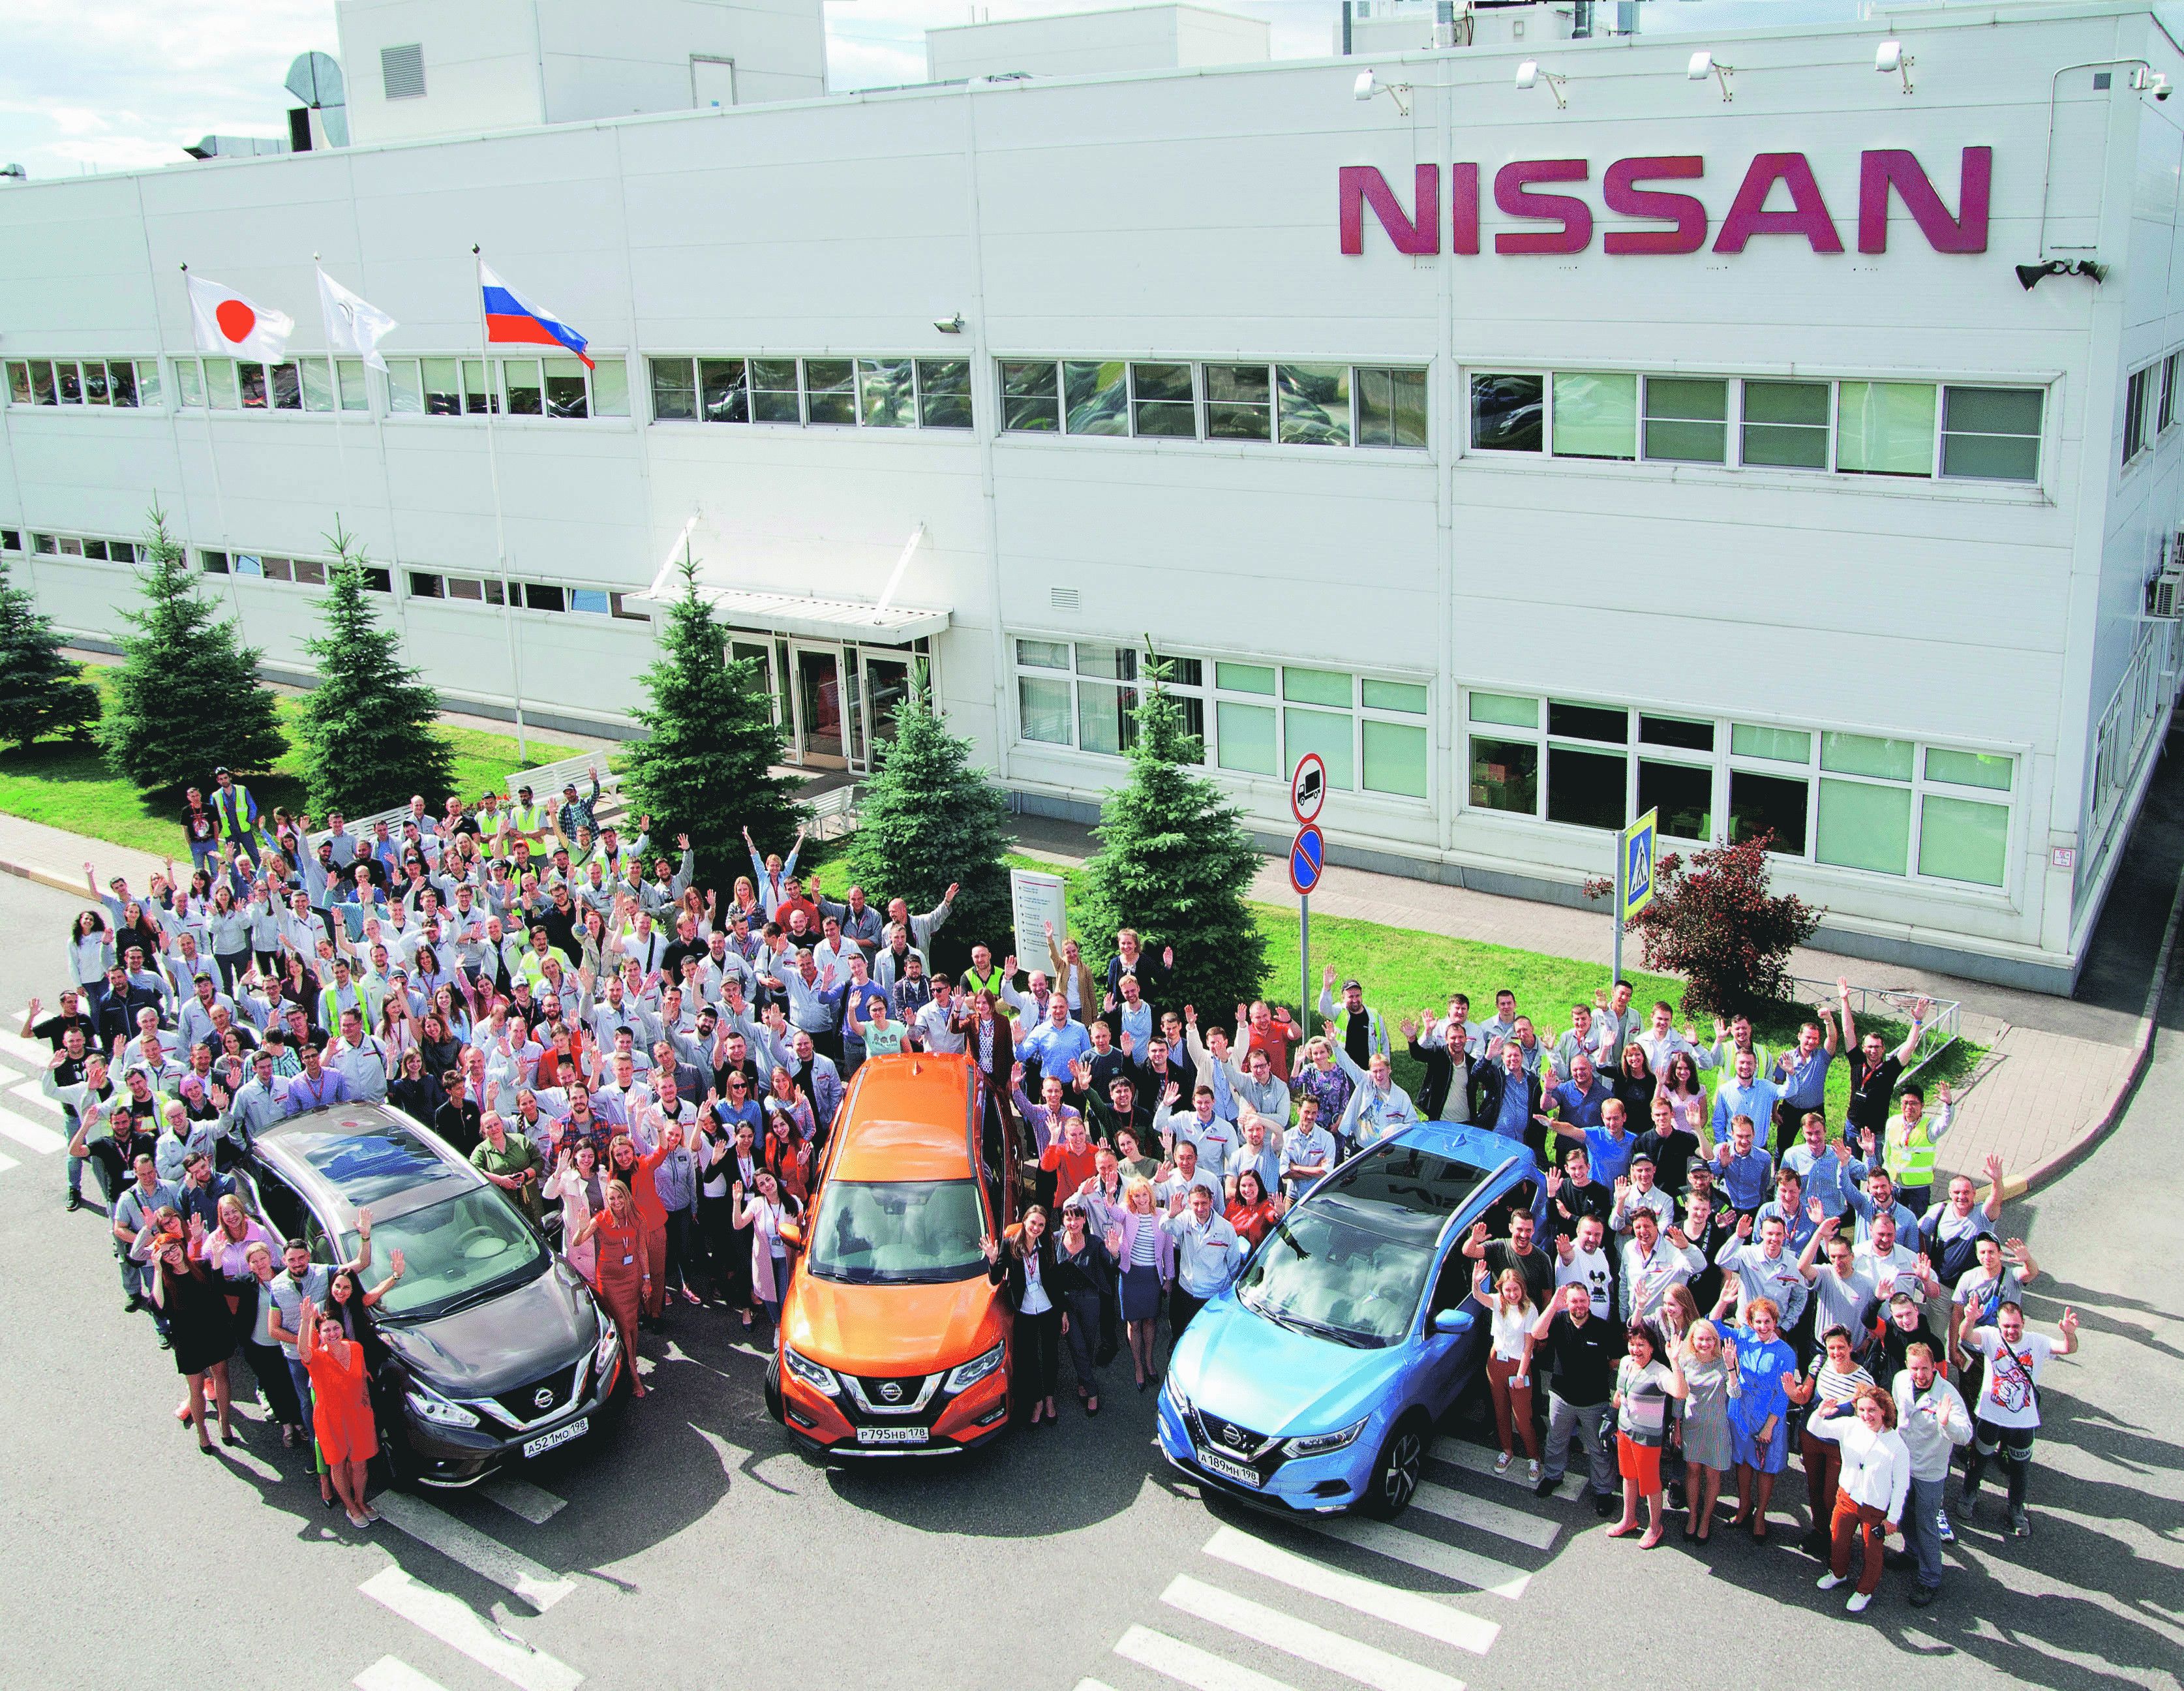 Началось. На заводе Nissan в Питере будут массовые сокращения  